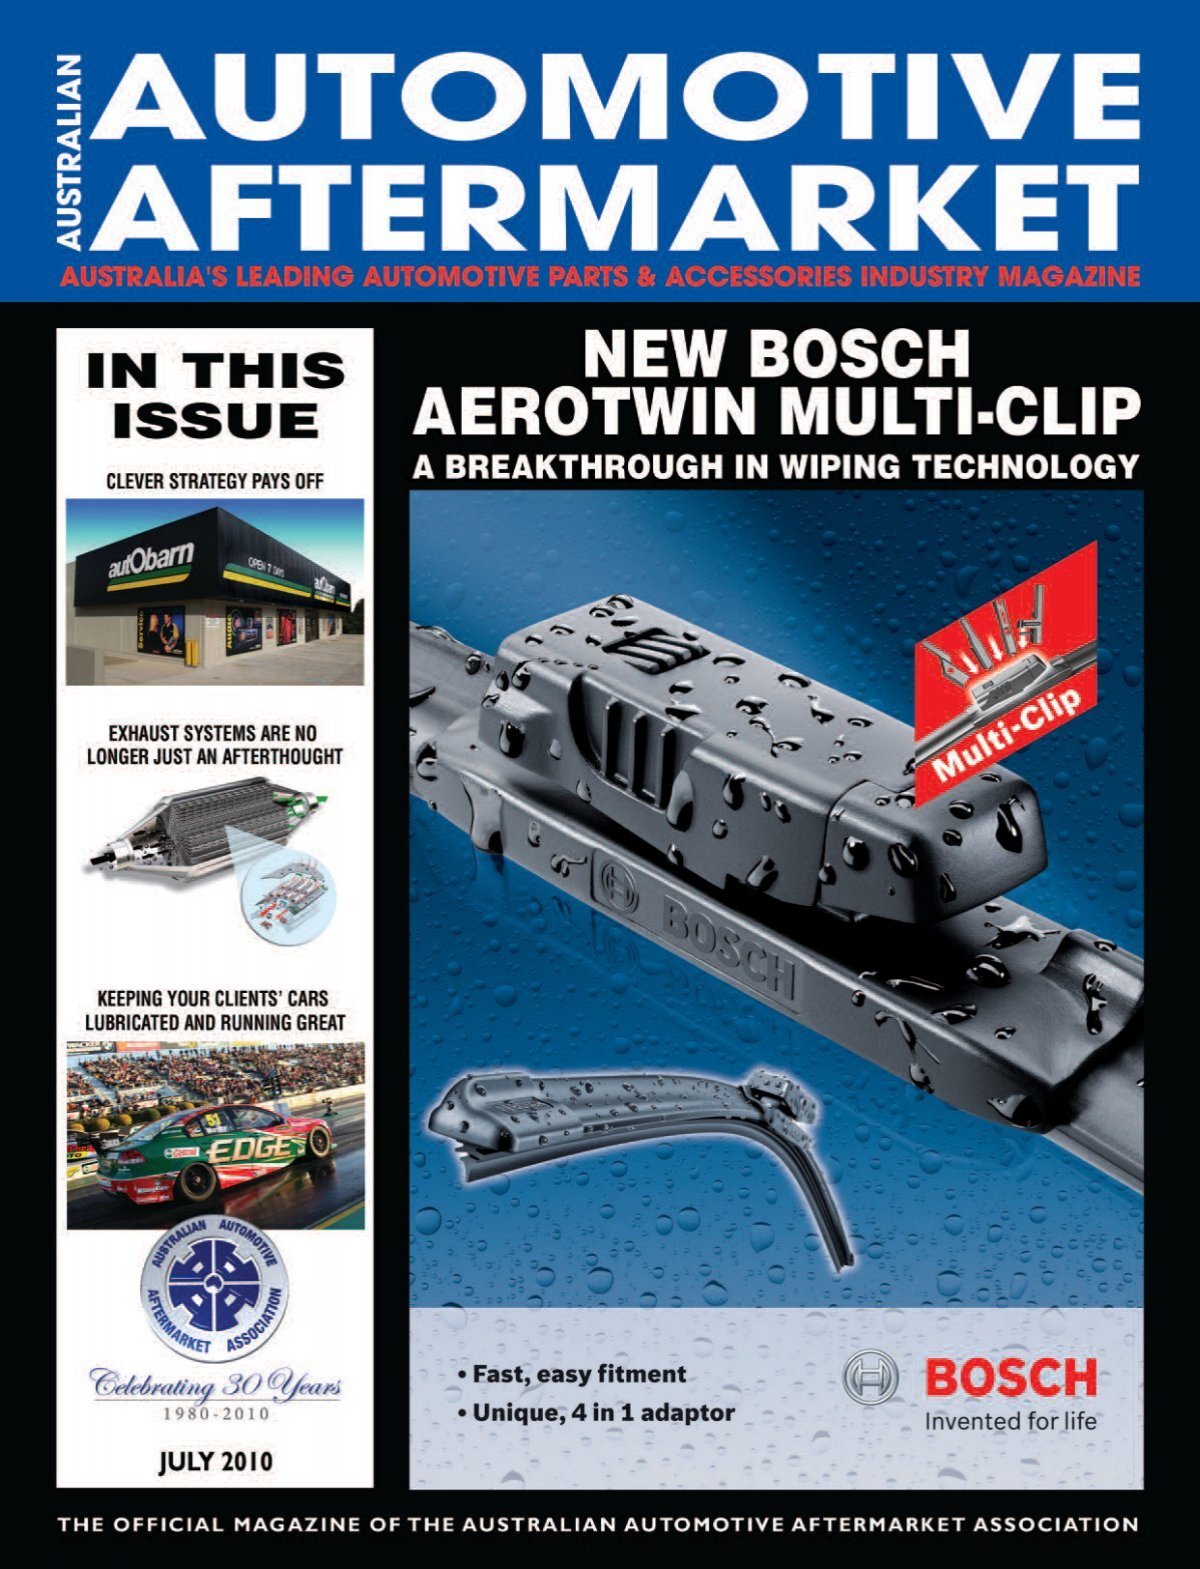 replacement parts - Australian Automotive Aftermarket Magazine